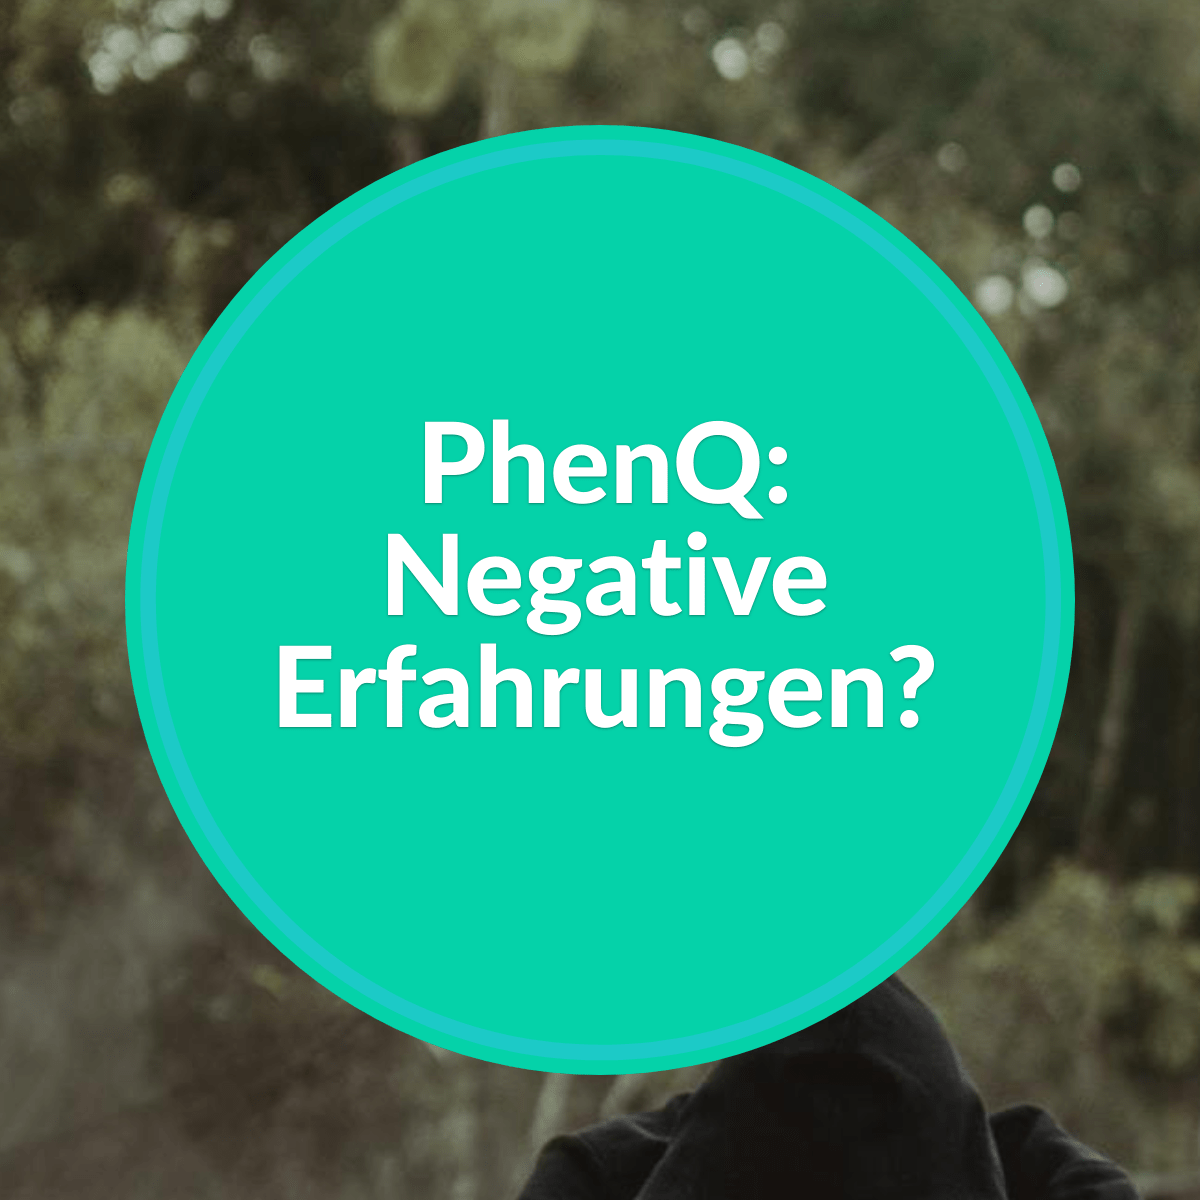 PhenQ: Negative Erfahrungen?